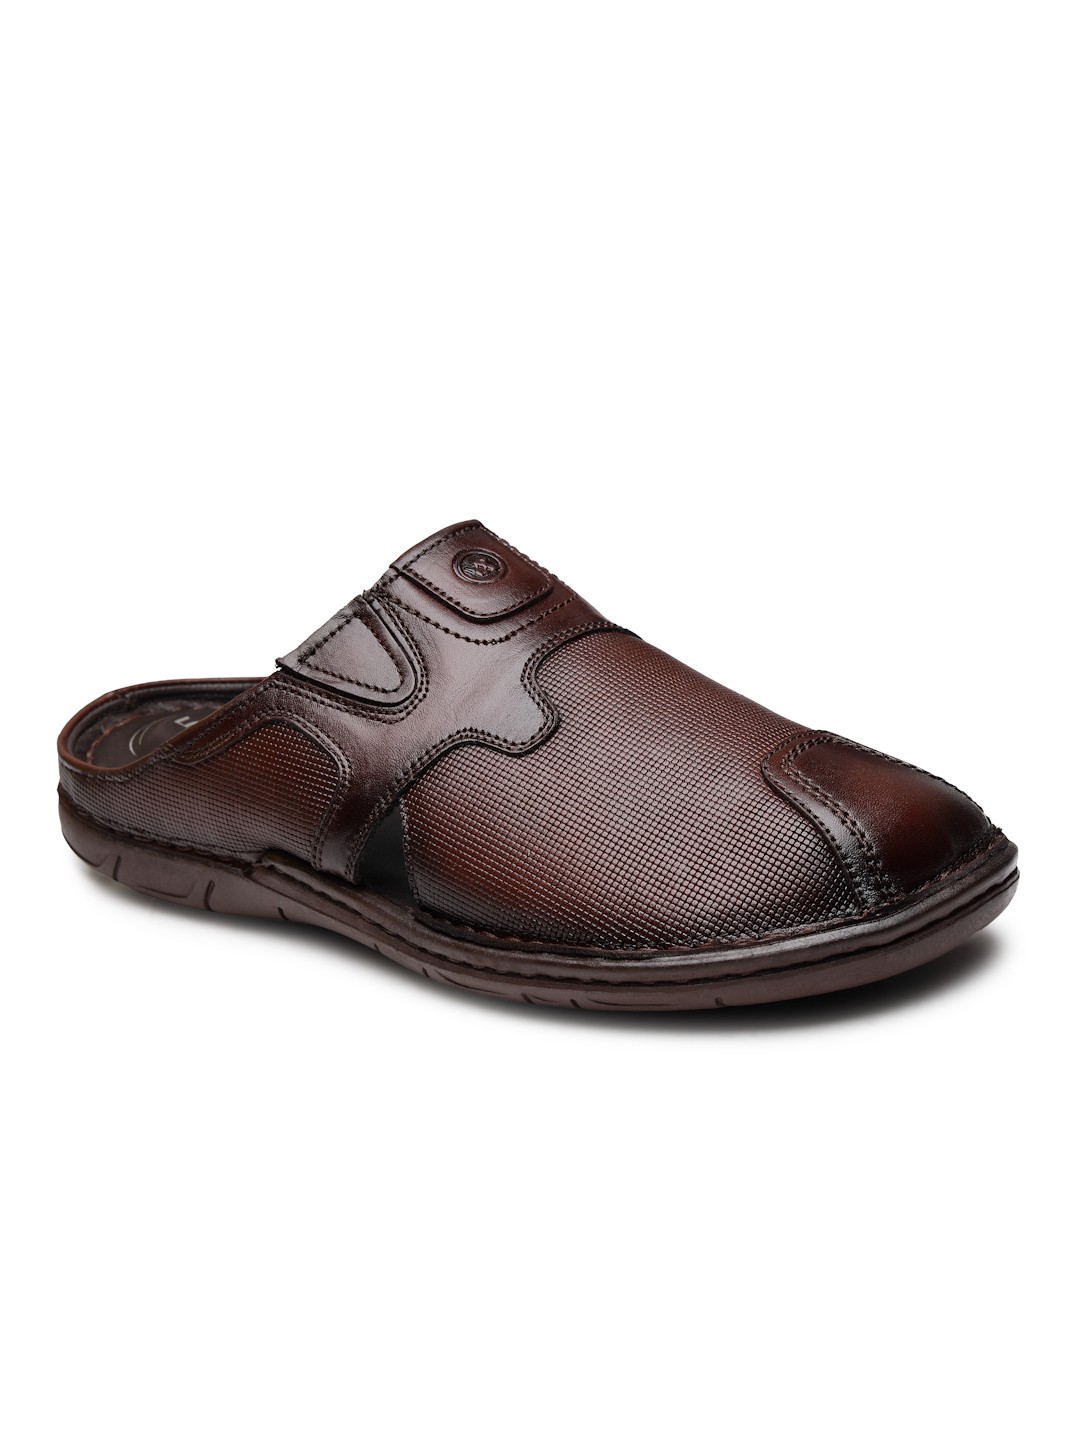 Buy Von Wellx Germany Comfort Men's Brown Slippers Arlo Online in Gujarat